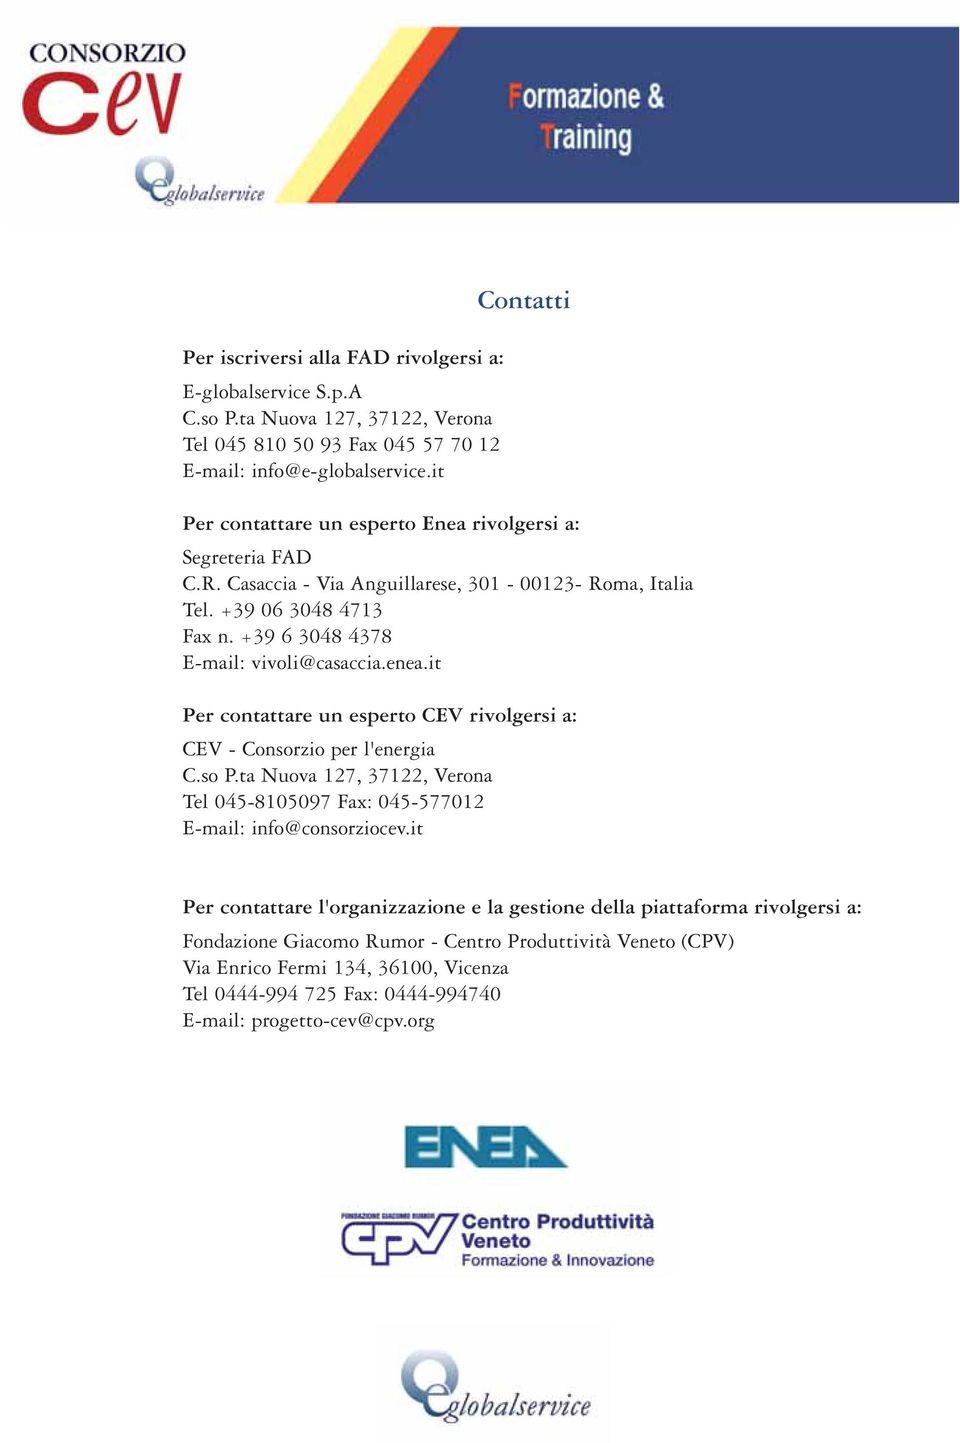 +39 6 3048 4378 E-mail: vivoli@casaccia.enea.it Per contattare un esperto CEV rivolgersi a: CEV - Consorzio per l'energia C.so P.